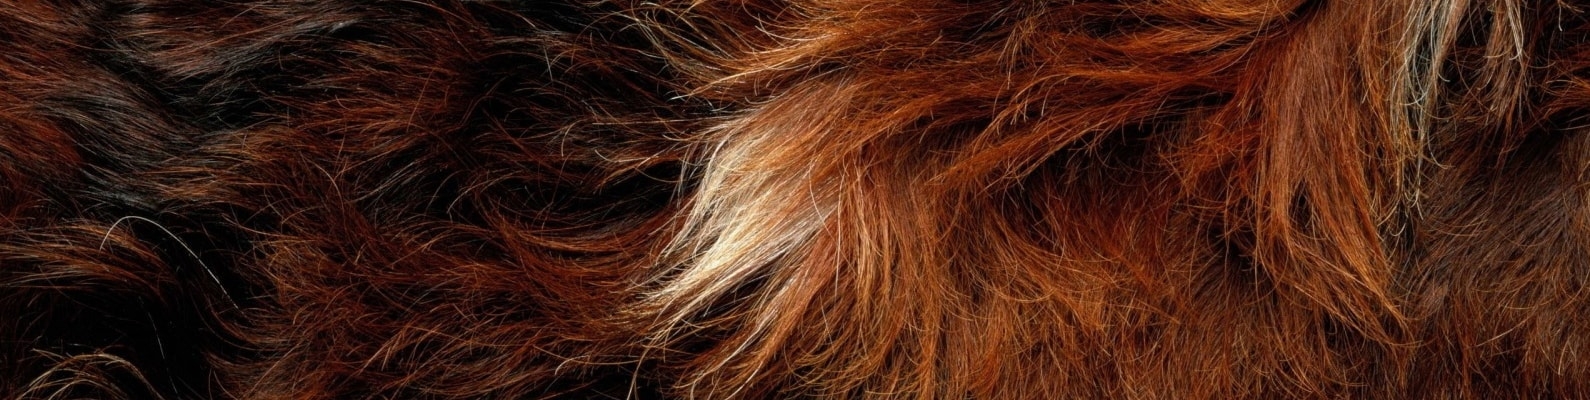 hair, fur, animal